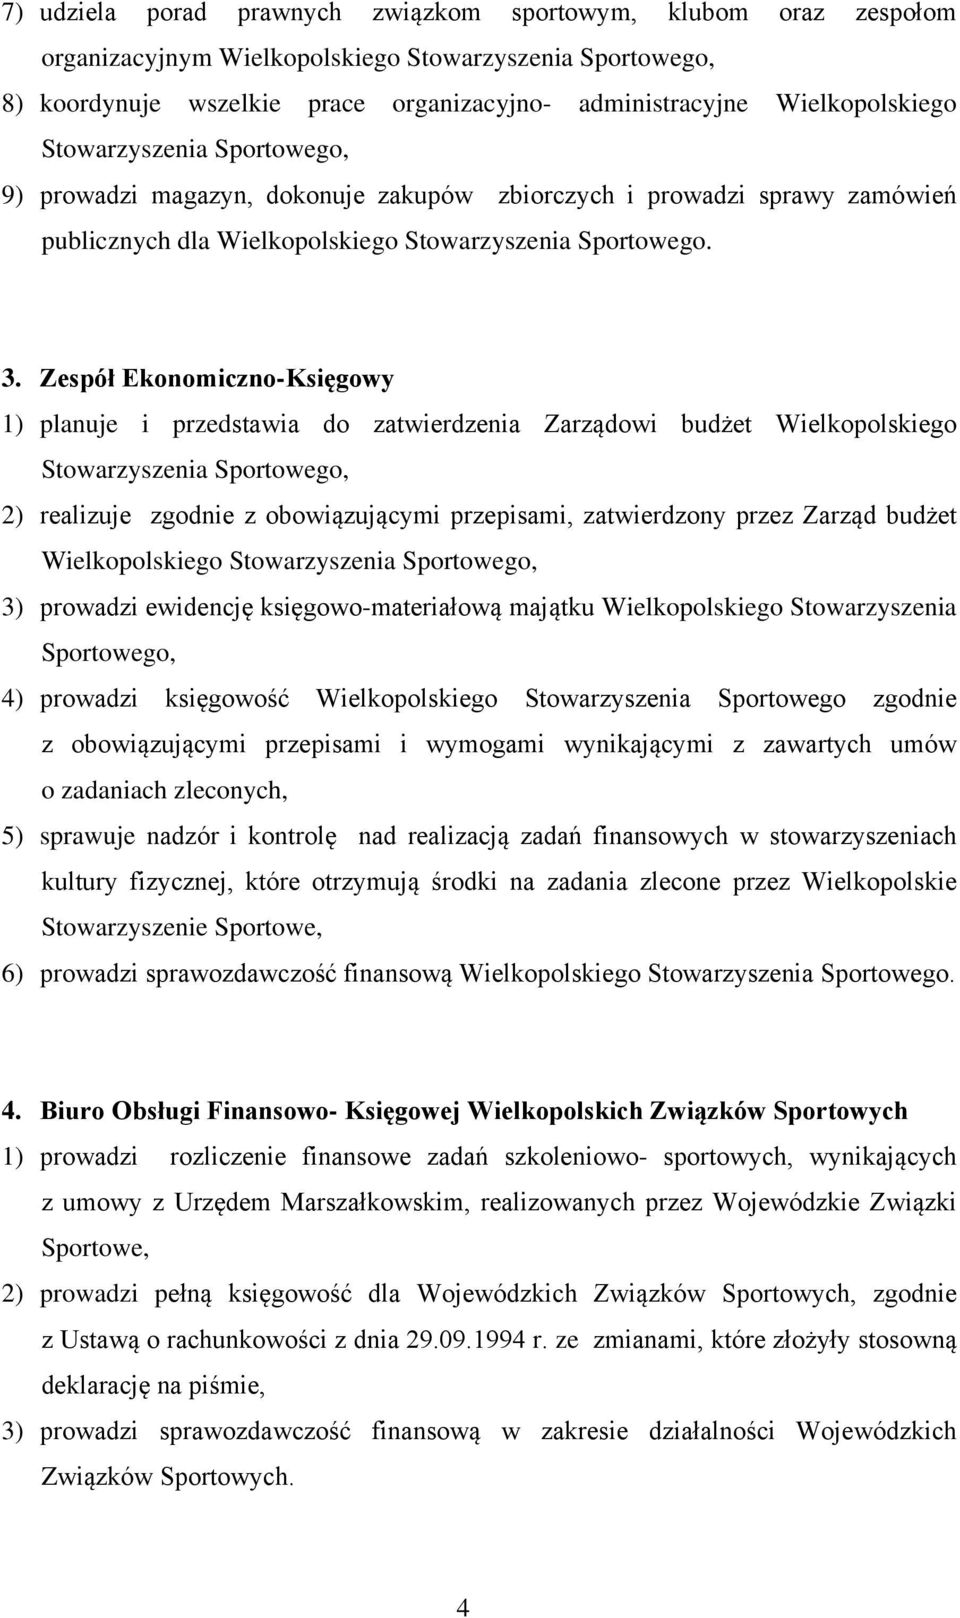 Zespół Ekonomiczno-Księgowy 1) planuje i przedstawia do zatwierdzenia Zarządowi budżet Wielkopolskiego Stowarzyszenia Sportowego, 2) realizuje zgodnie z obowiązującymi przepisami, zatwierdzony przez